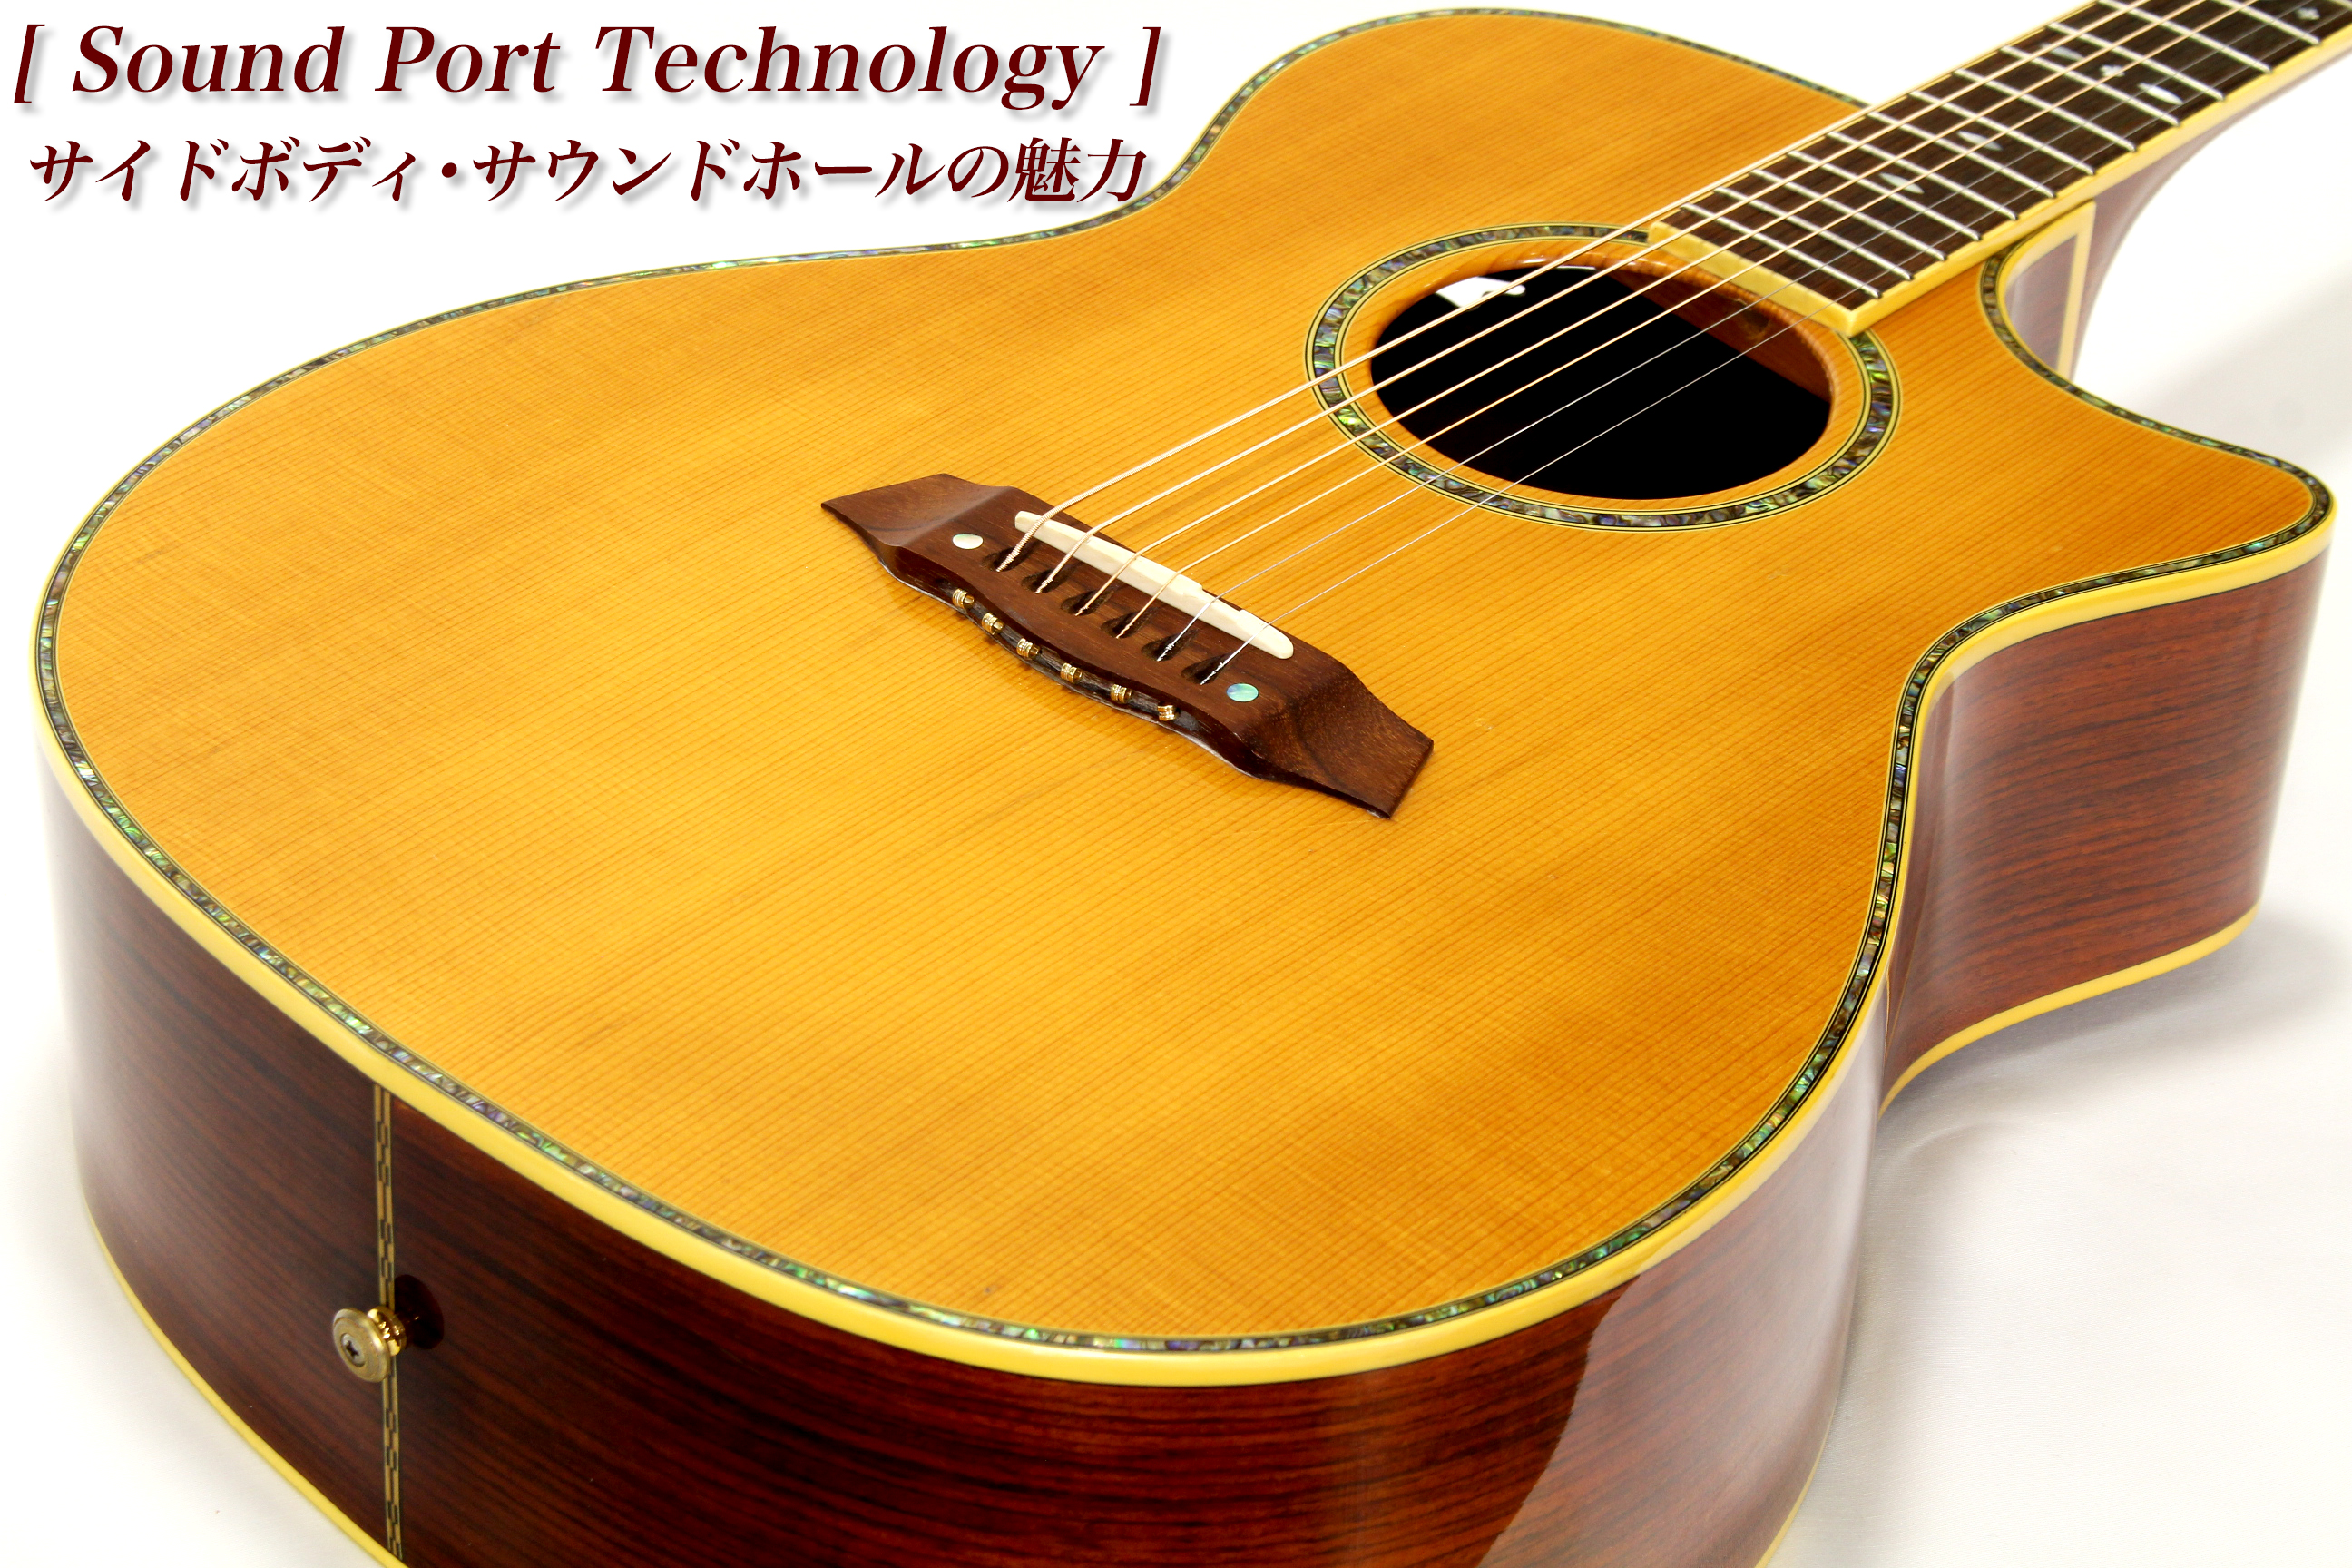 Sound Port Technology】サイドボディ・サウンドホールの魅力